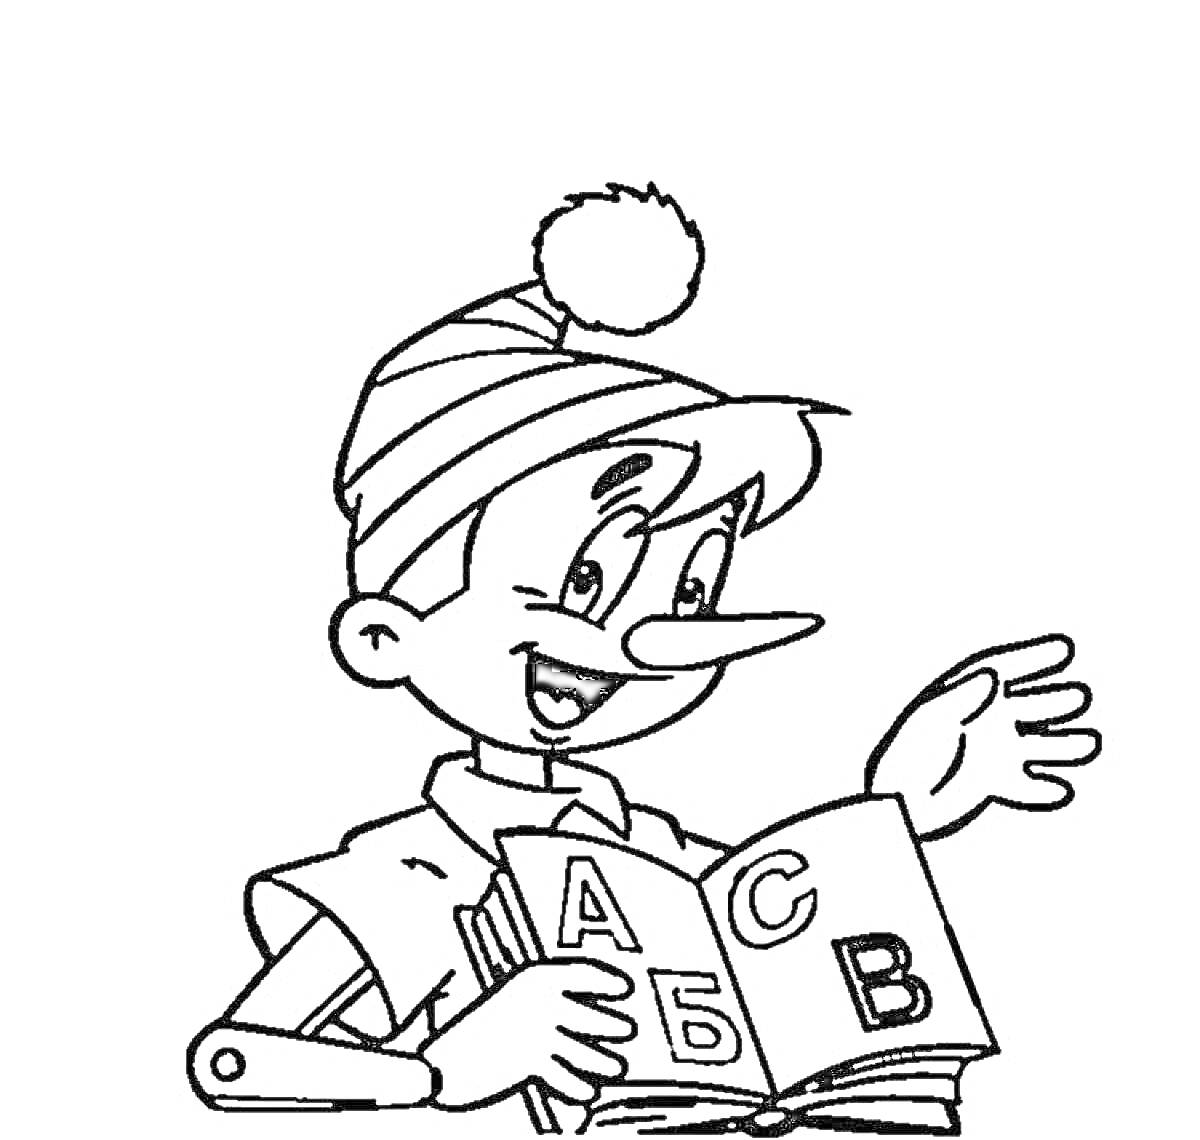 Геройчик в шапке с помпоном читает книгу с буквами А, Б и В